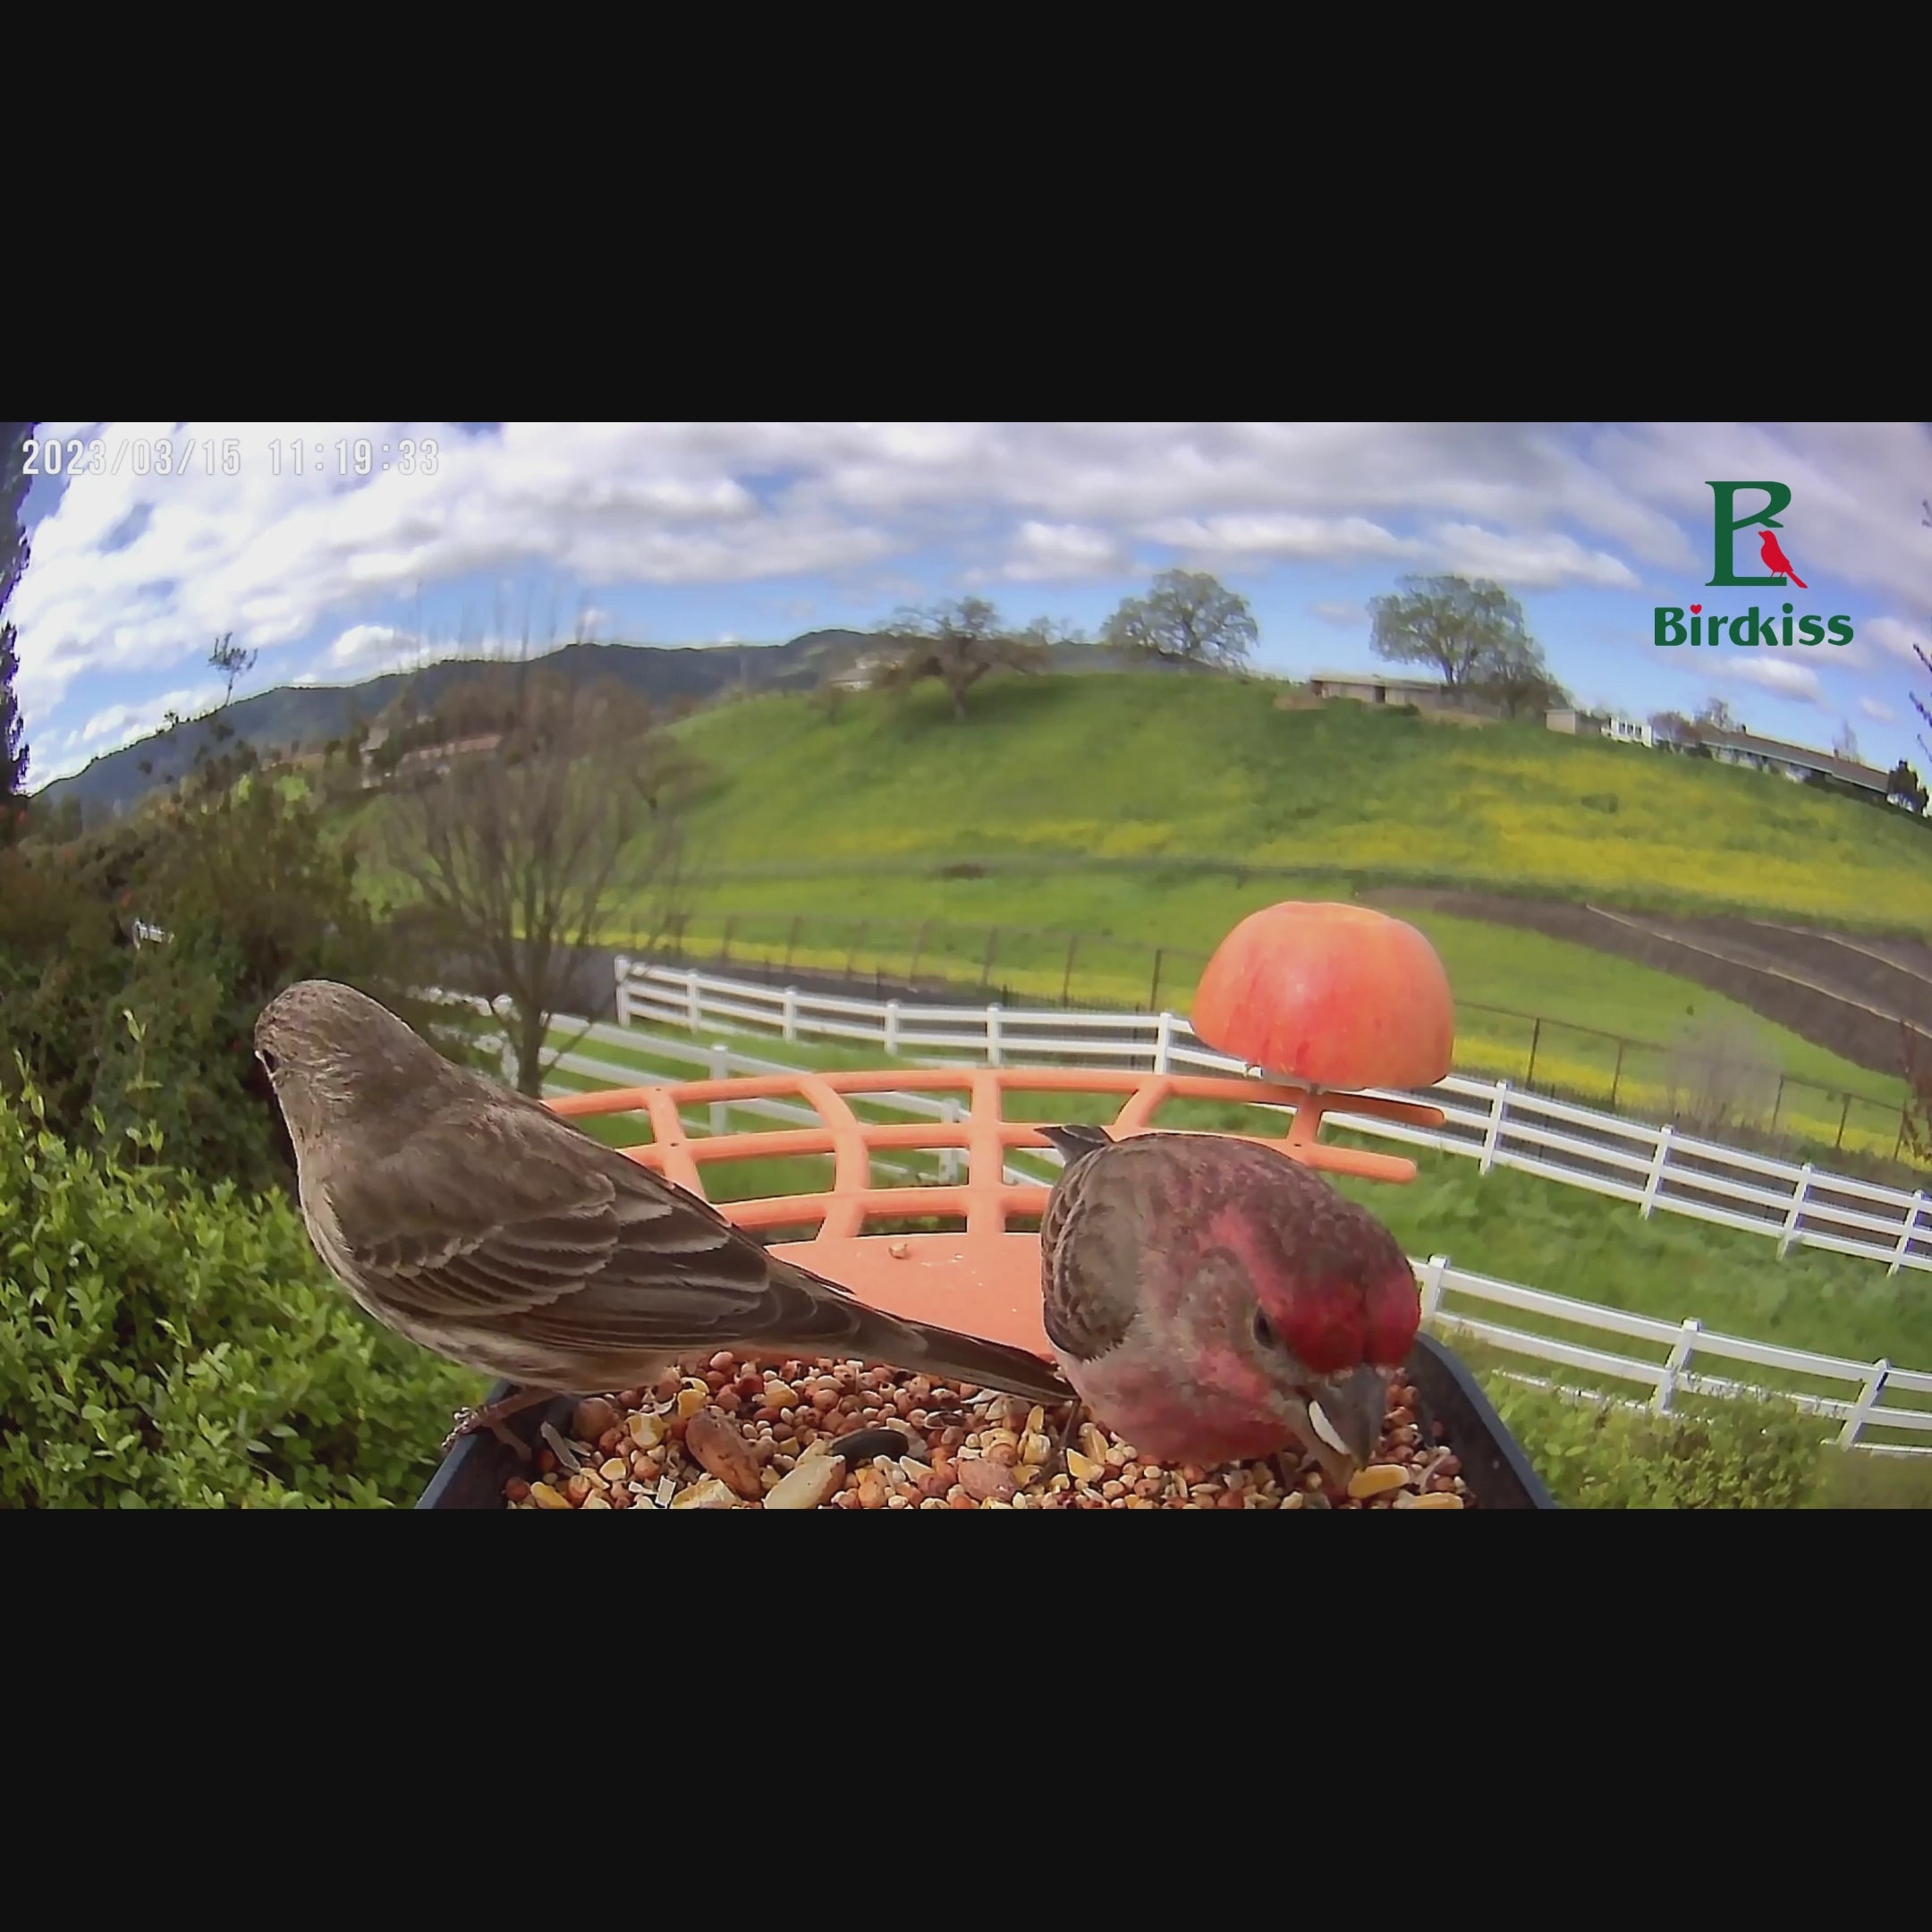 Cardinal Watches Another Bird Eat from Birdkiss Smart Bird Feeder